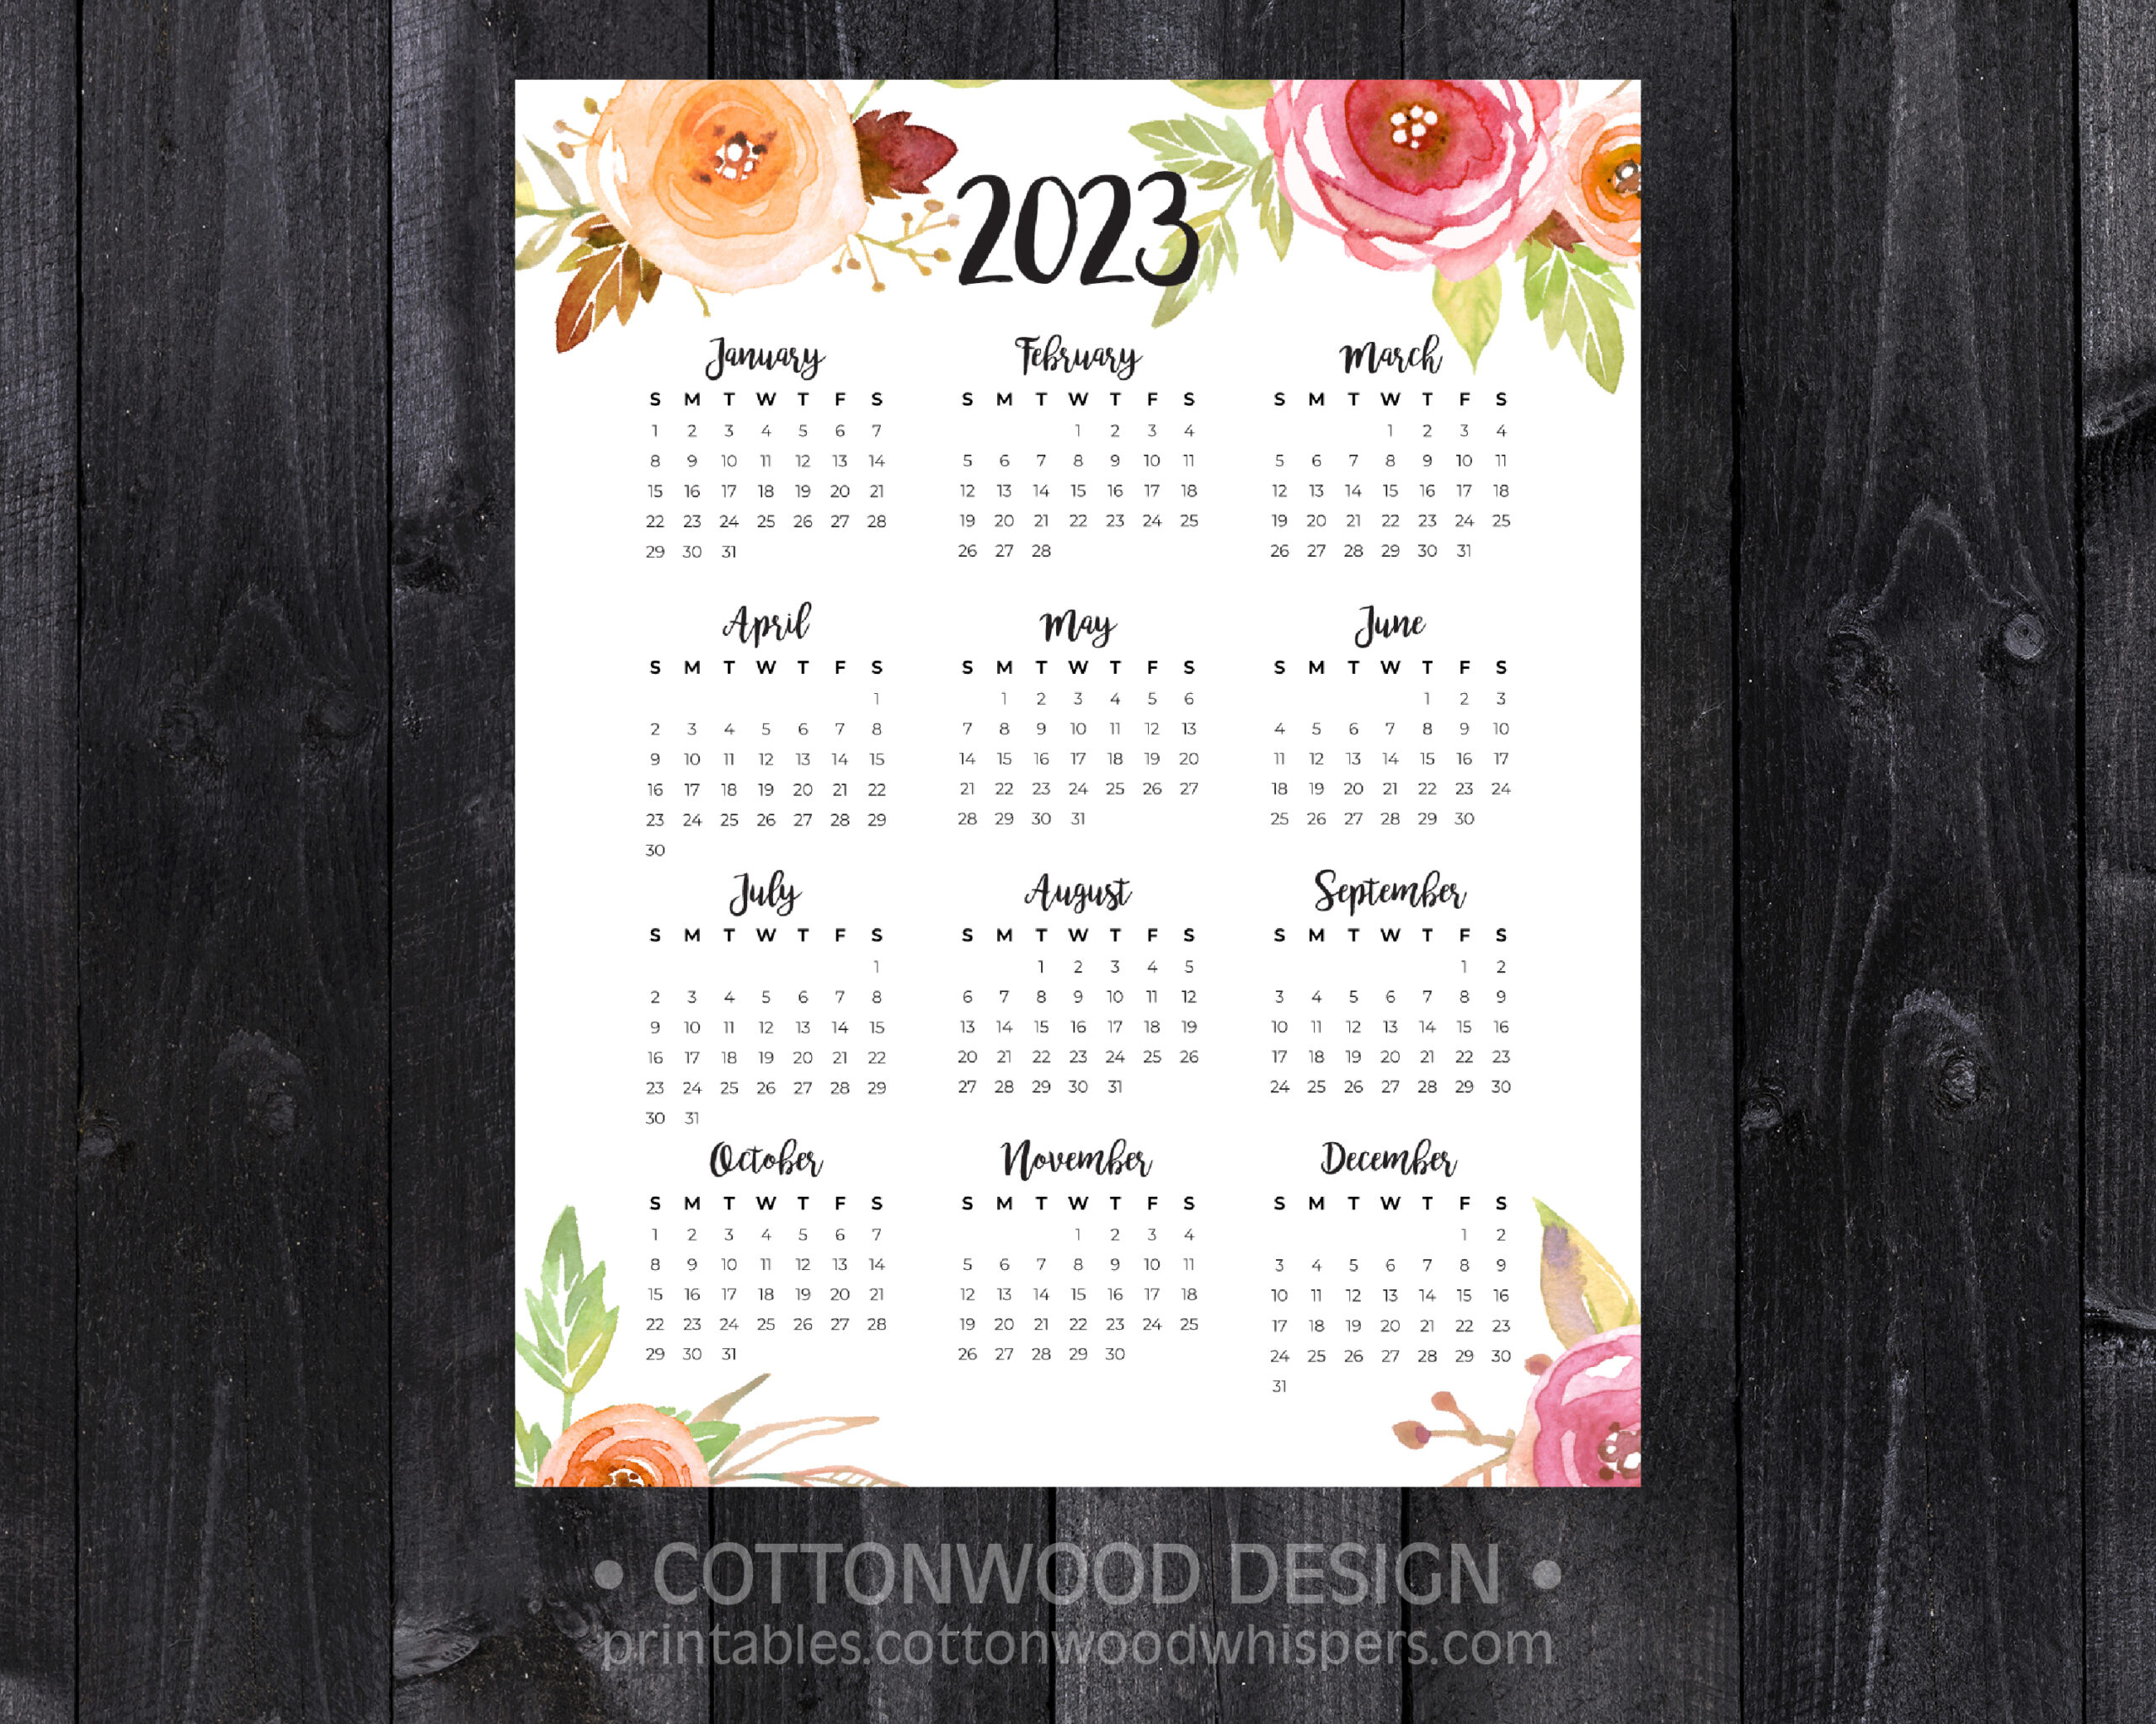 year-2023-calendar-templates-123calendars-com-2023-calendar-templates-and-images-carr-theresa